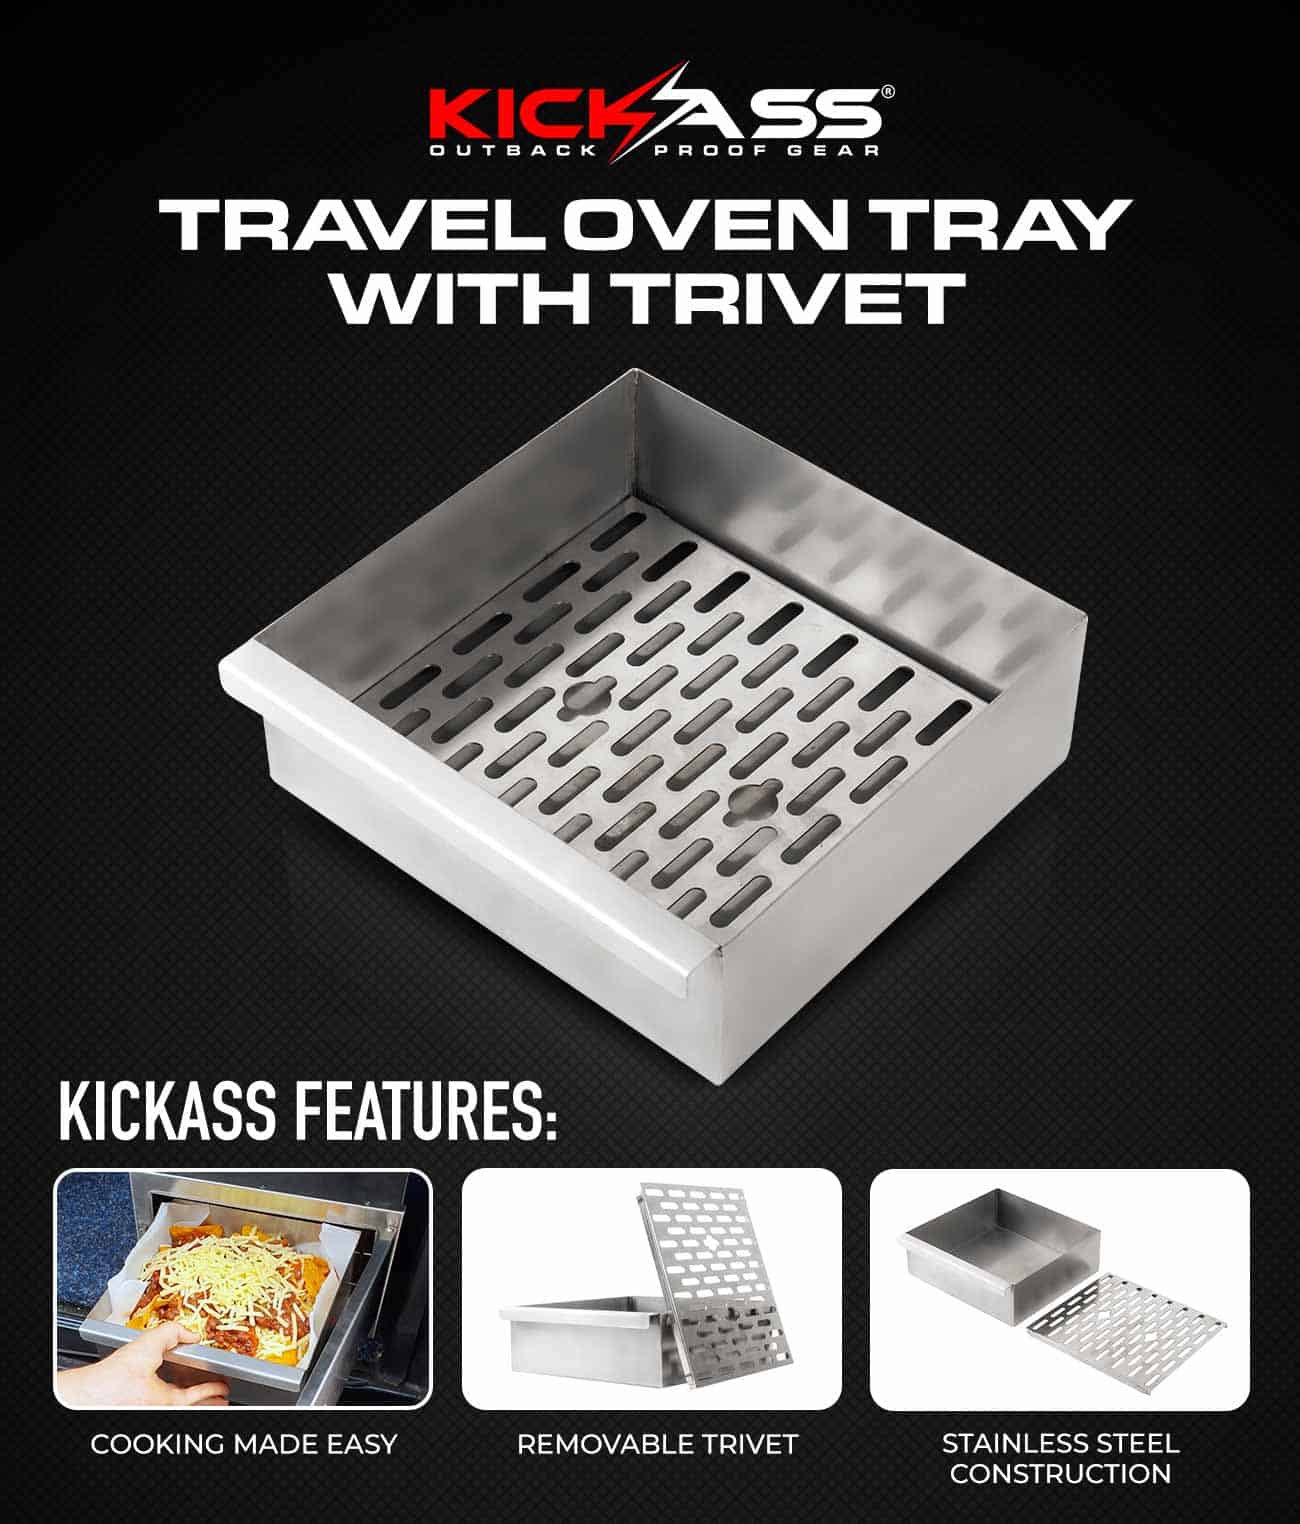 KATRAVELO12TRAY - KickAss Travel Oven Tray with Trivet 